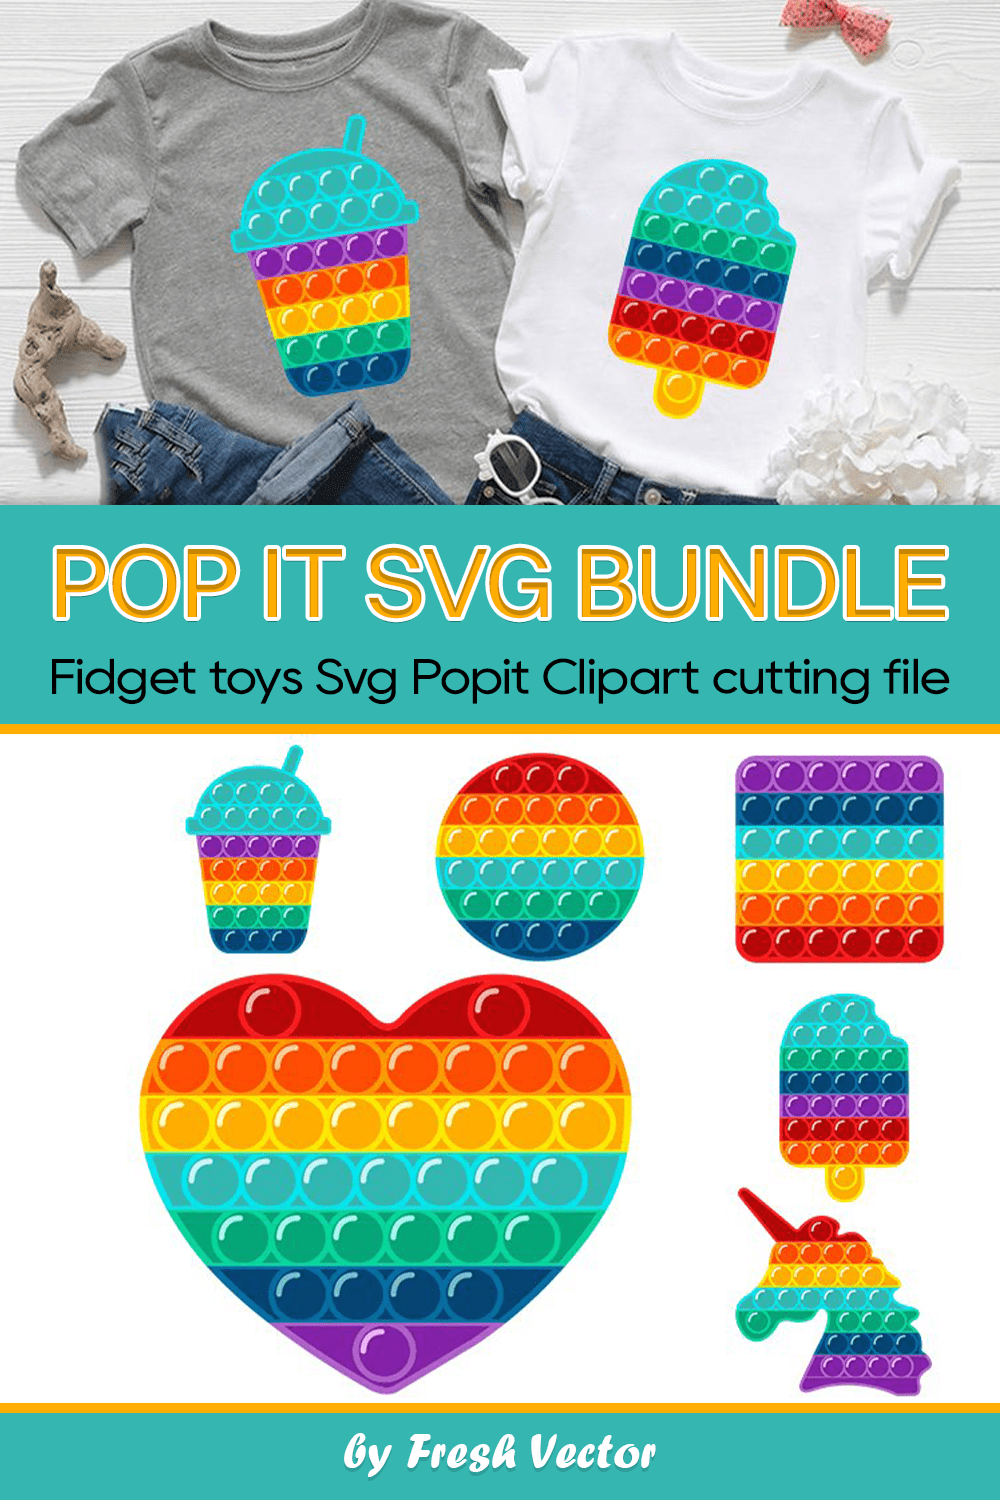 Pop It SVG Bundle - pinterest image preview.